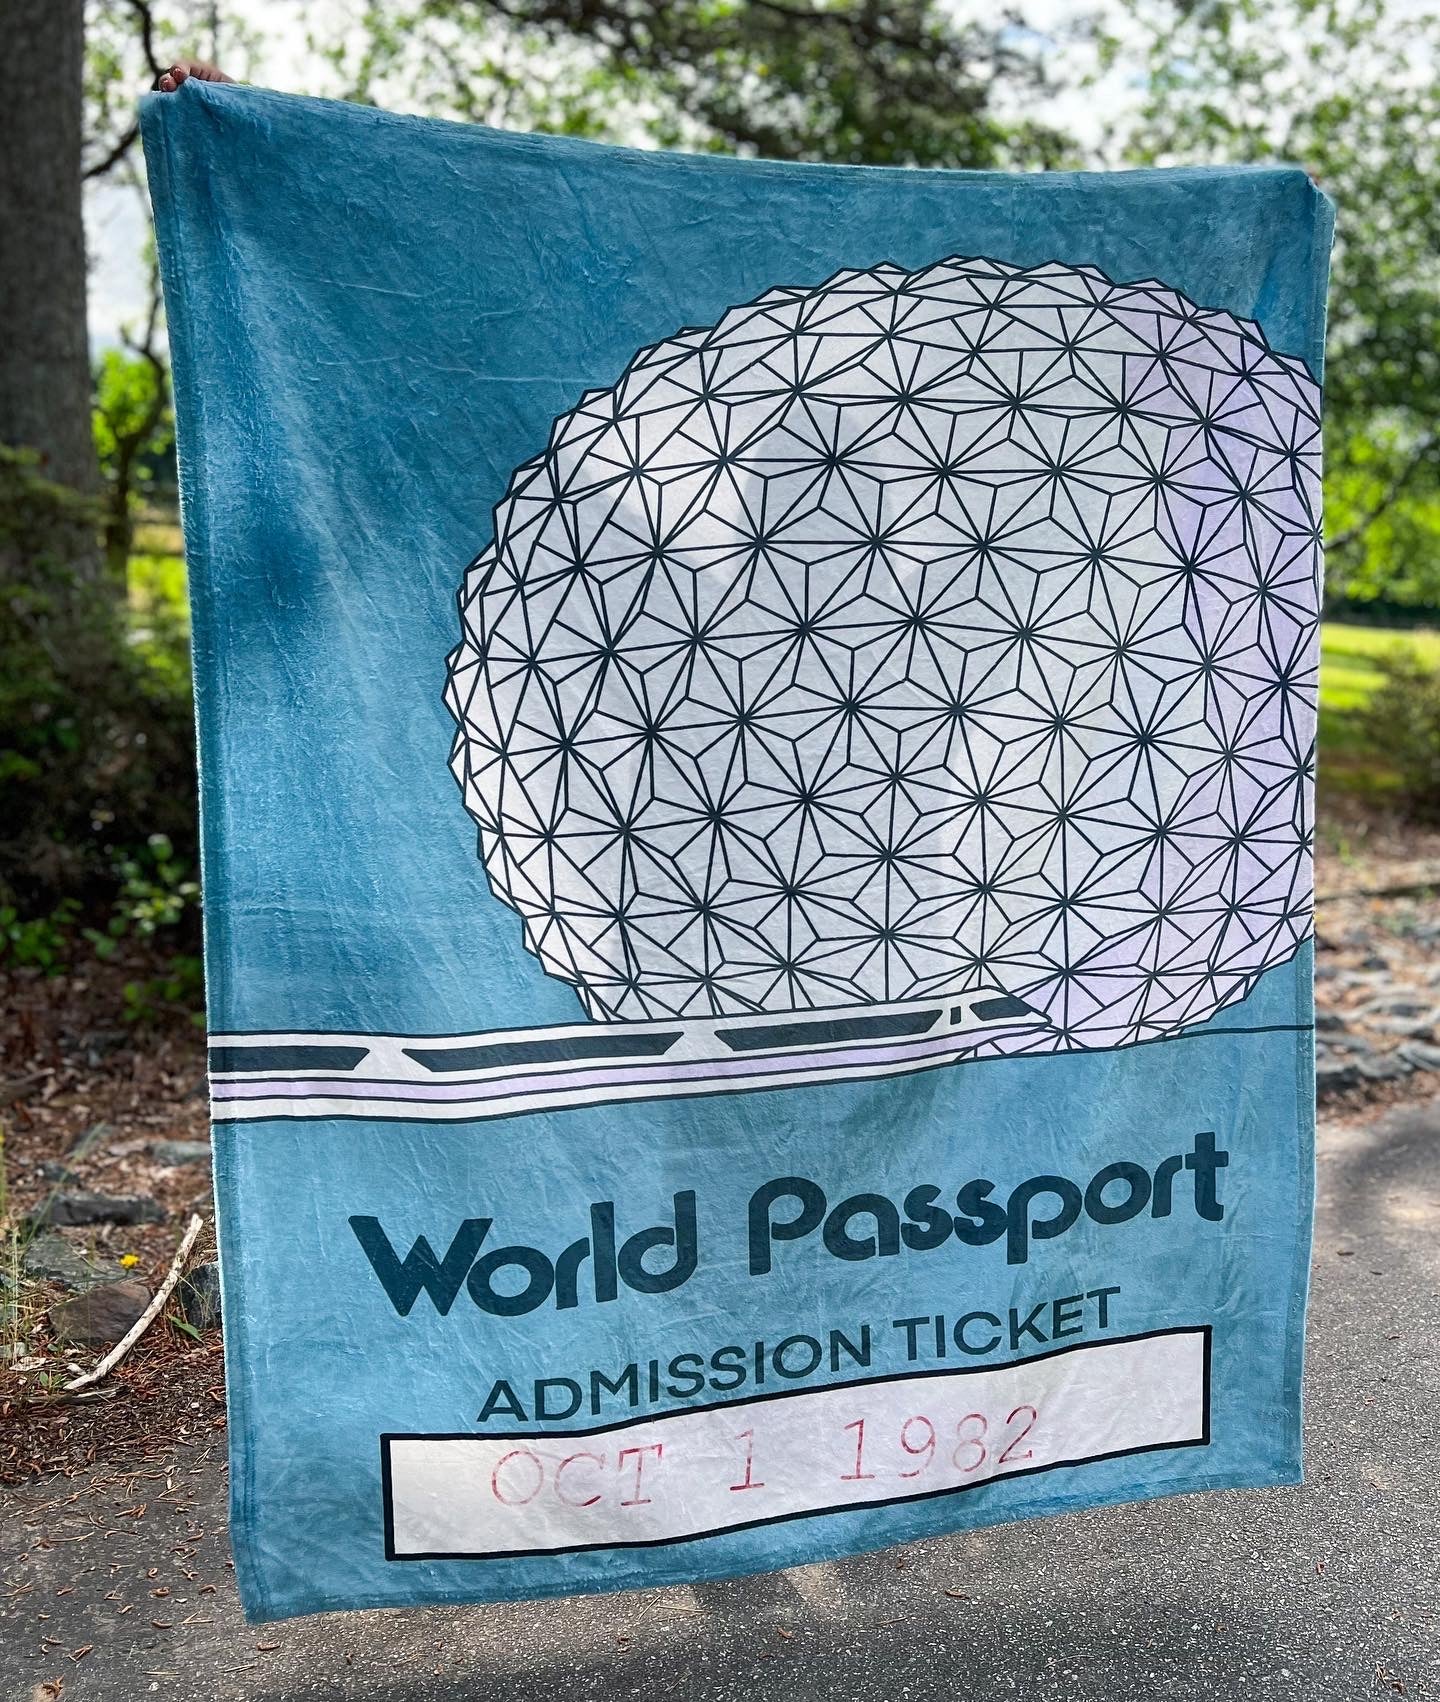 World Passport Blanket